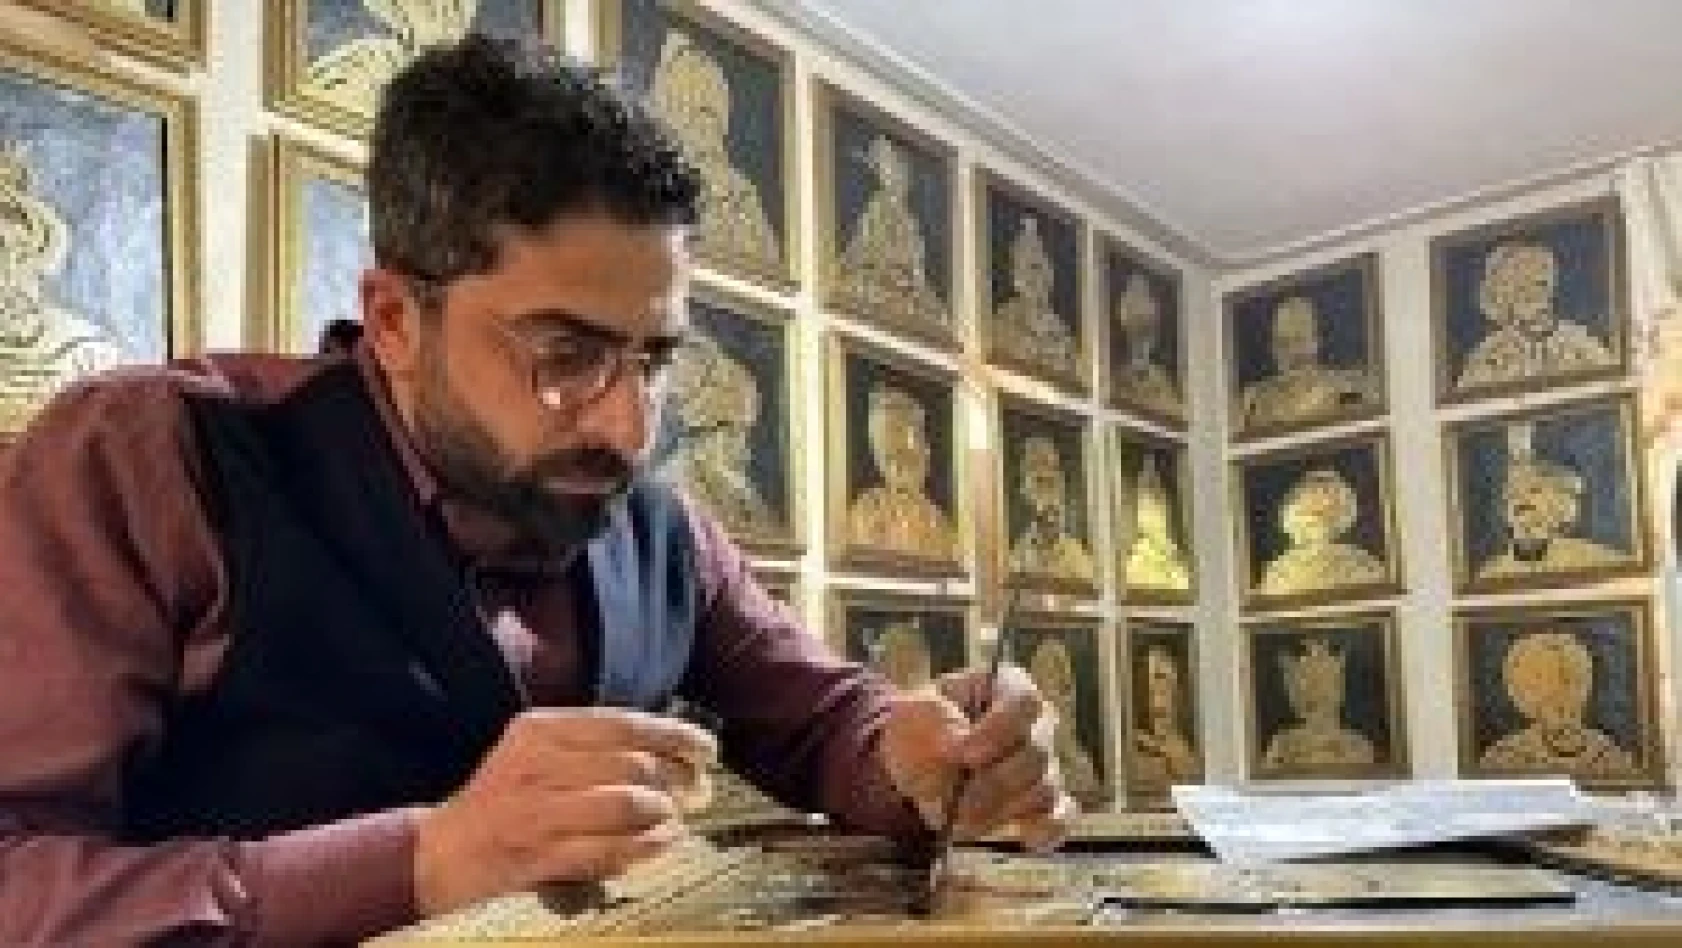 Osmanlı padişahlarını varak sanatıyla ahşaba resmetti